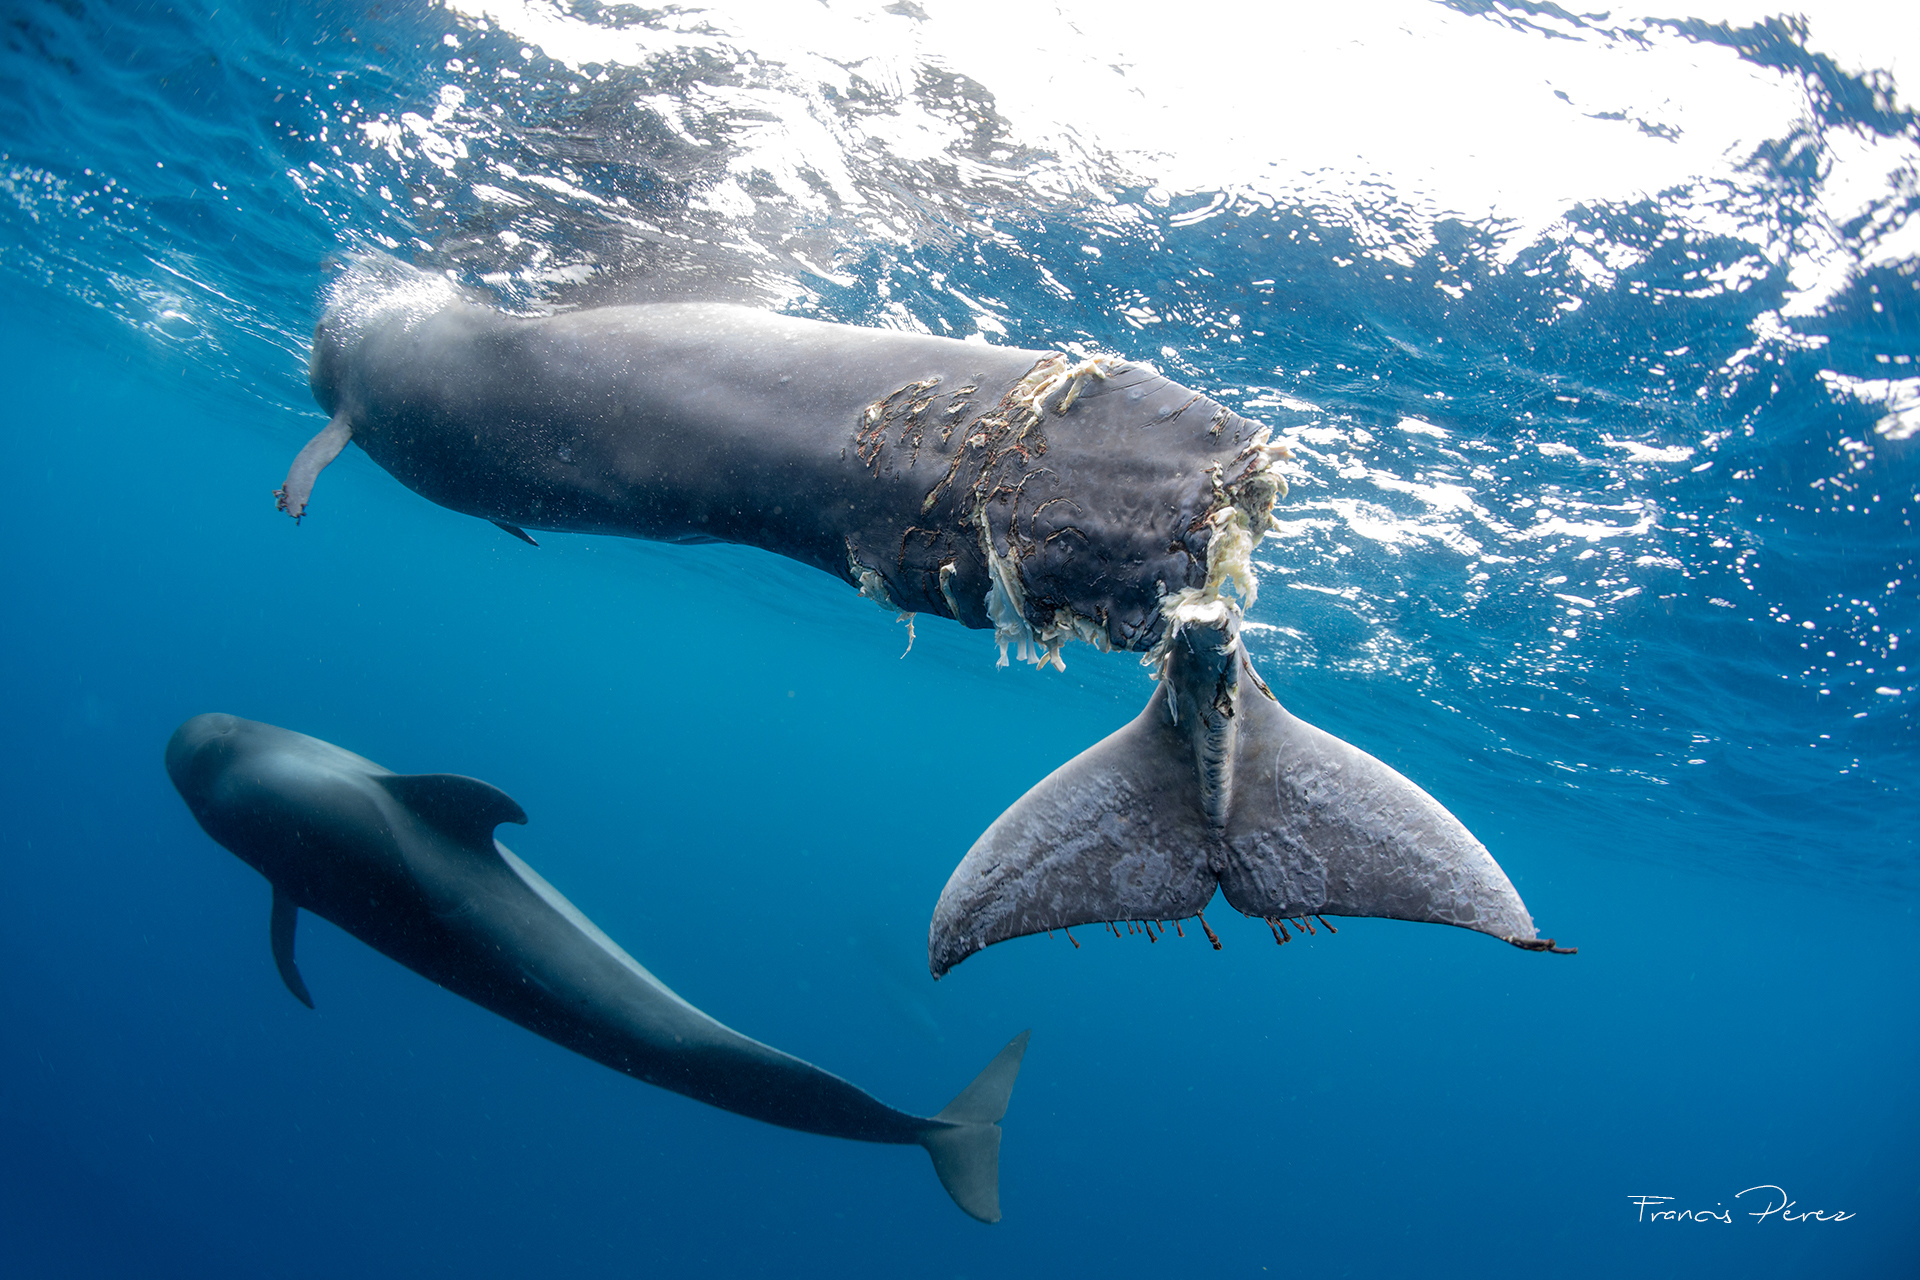 Ms de 400.000 firmas contra el superpuerto en Tenerife y por la proteccin de las ballenas